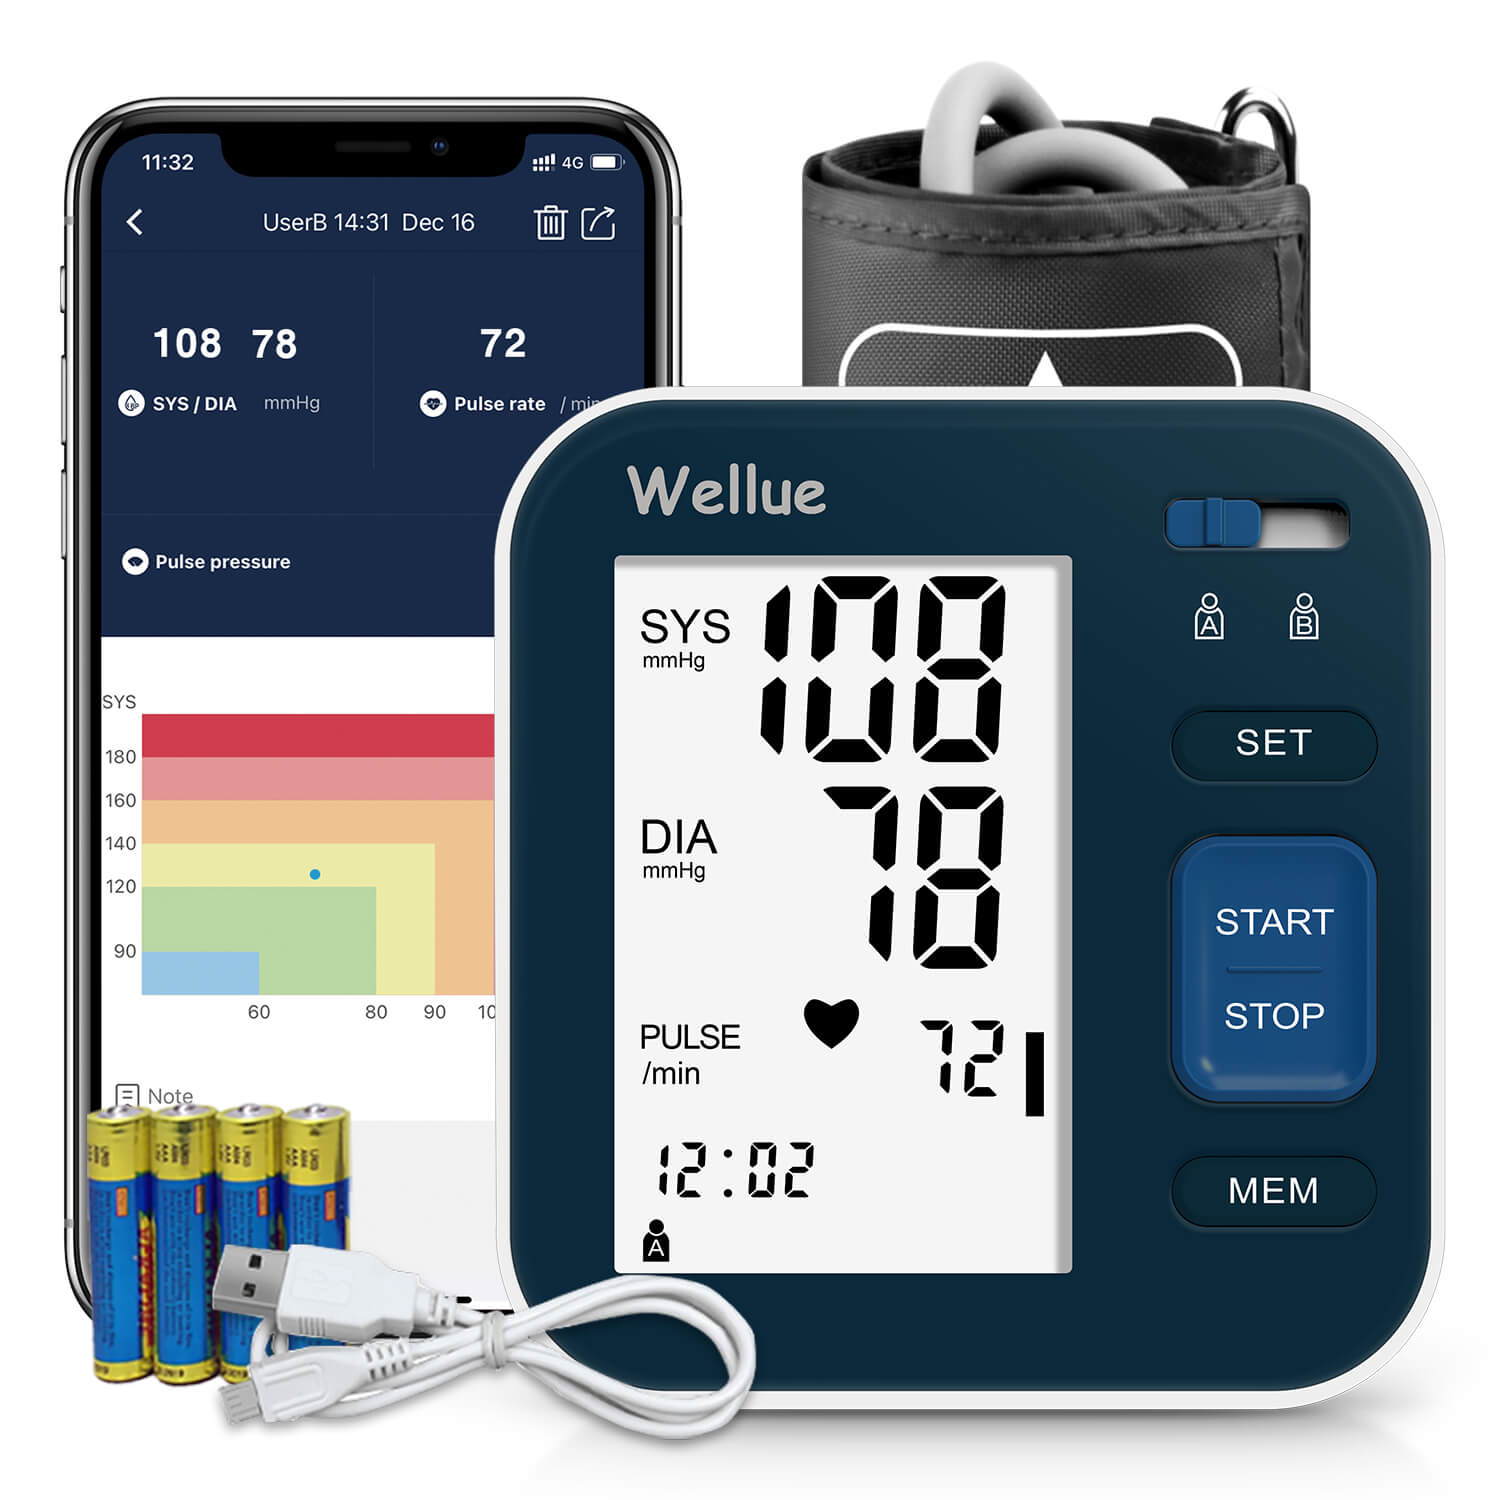 جهاز قياس دم الذراع Wellue Bluetooth باللون الأزرق الغامق.